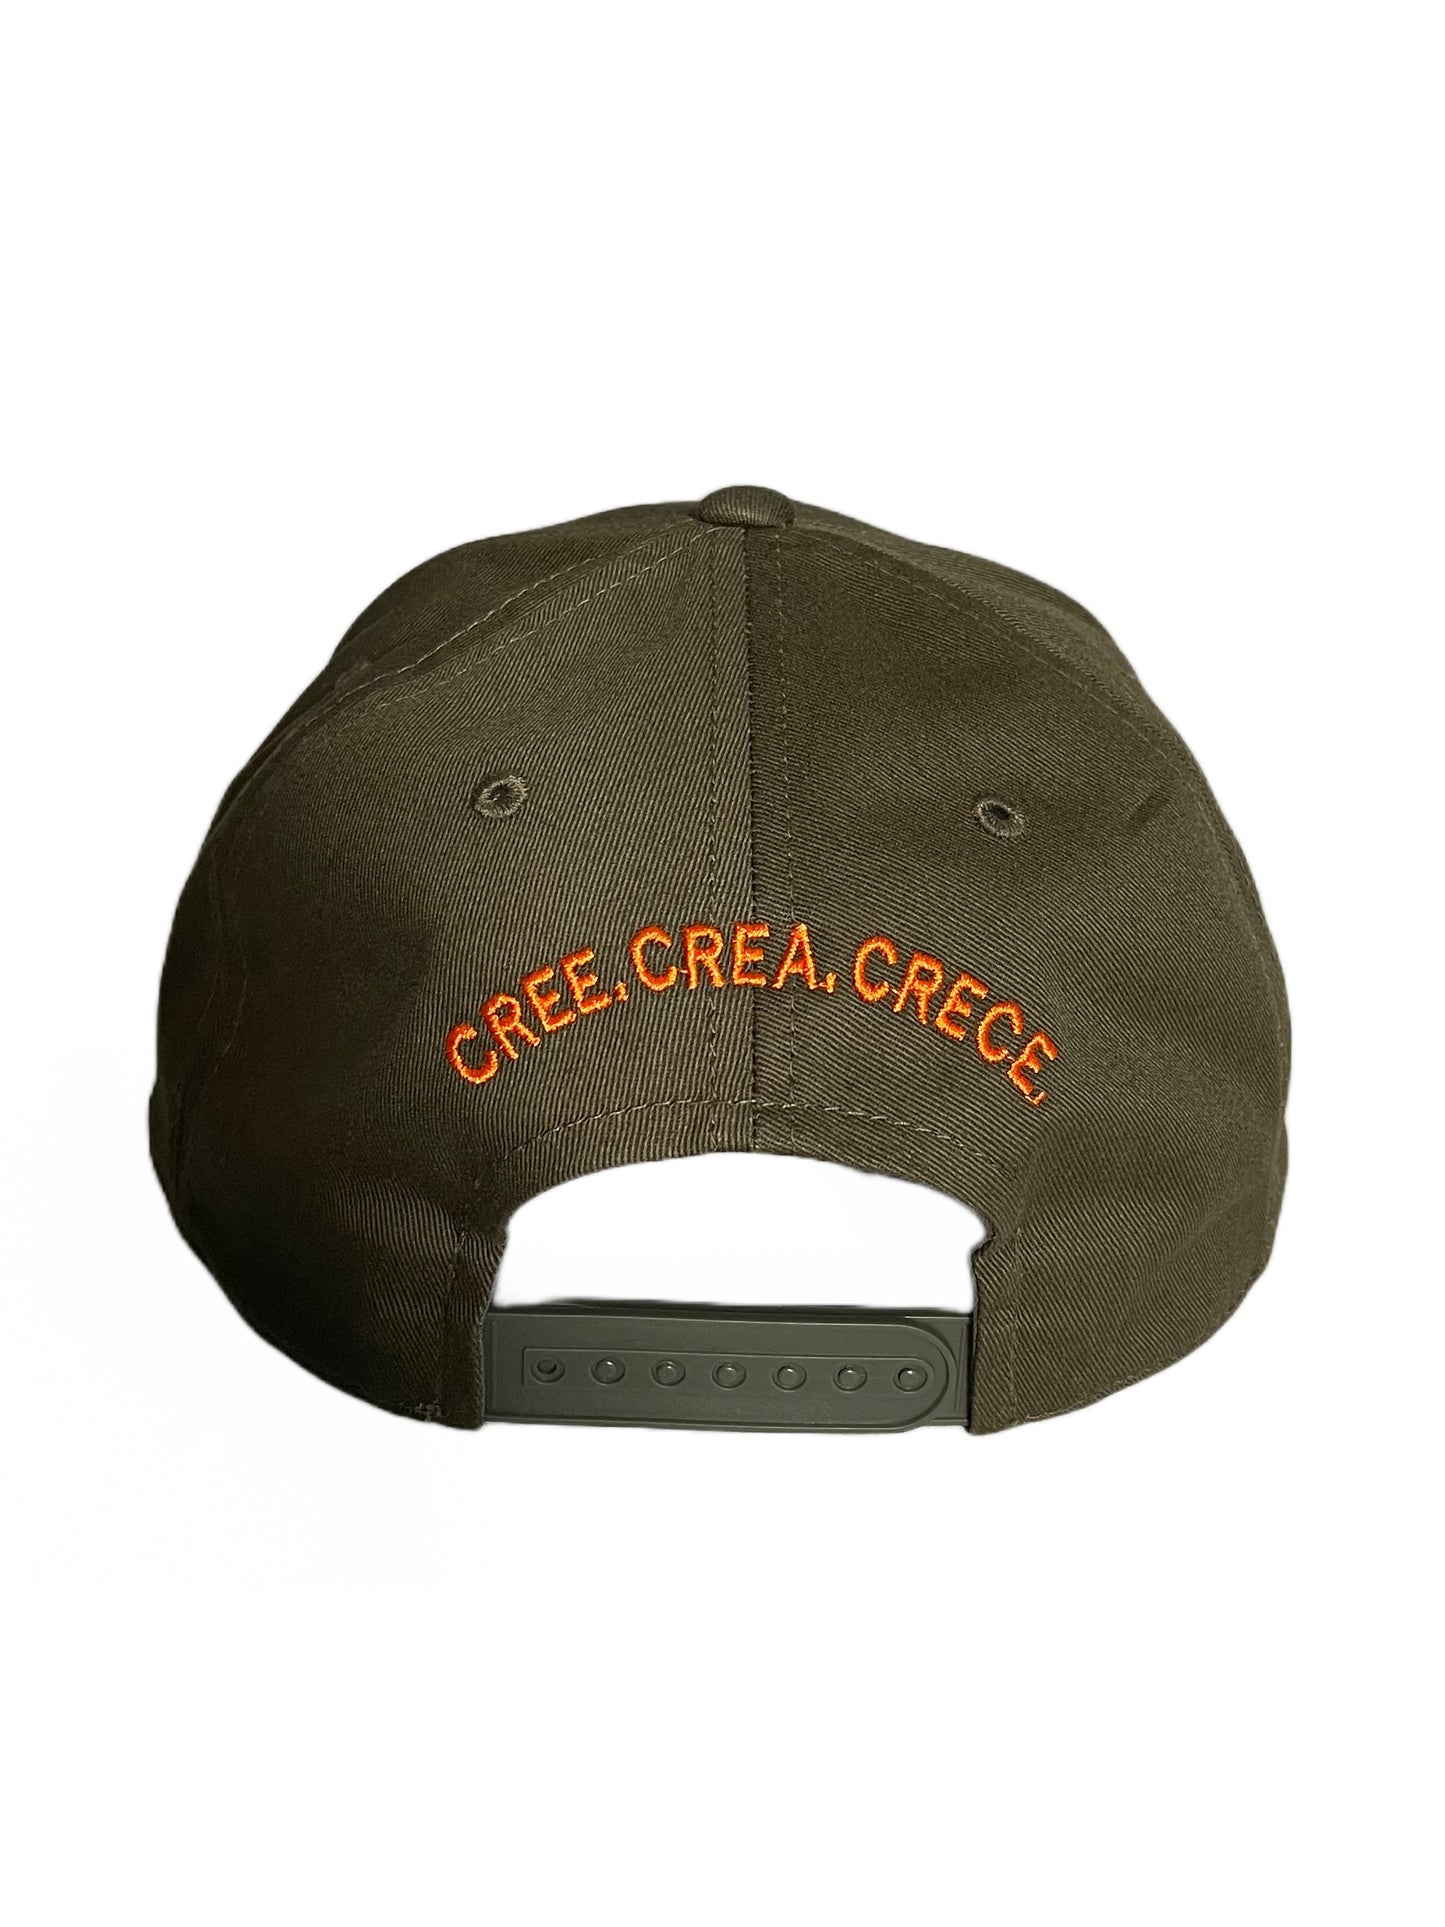 "CREE CREA CRECE FB by Felix Baez 5-Panel Hat